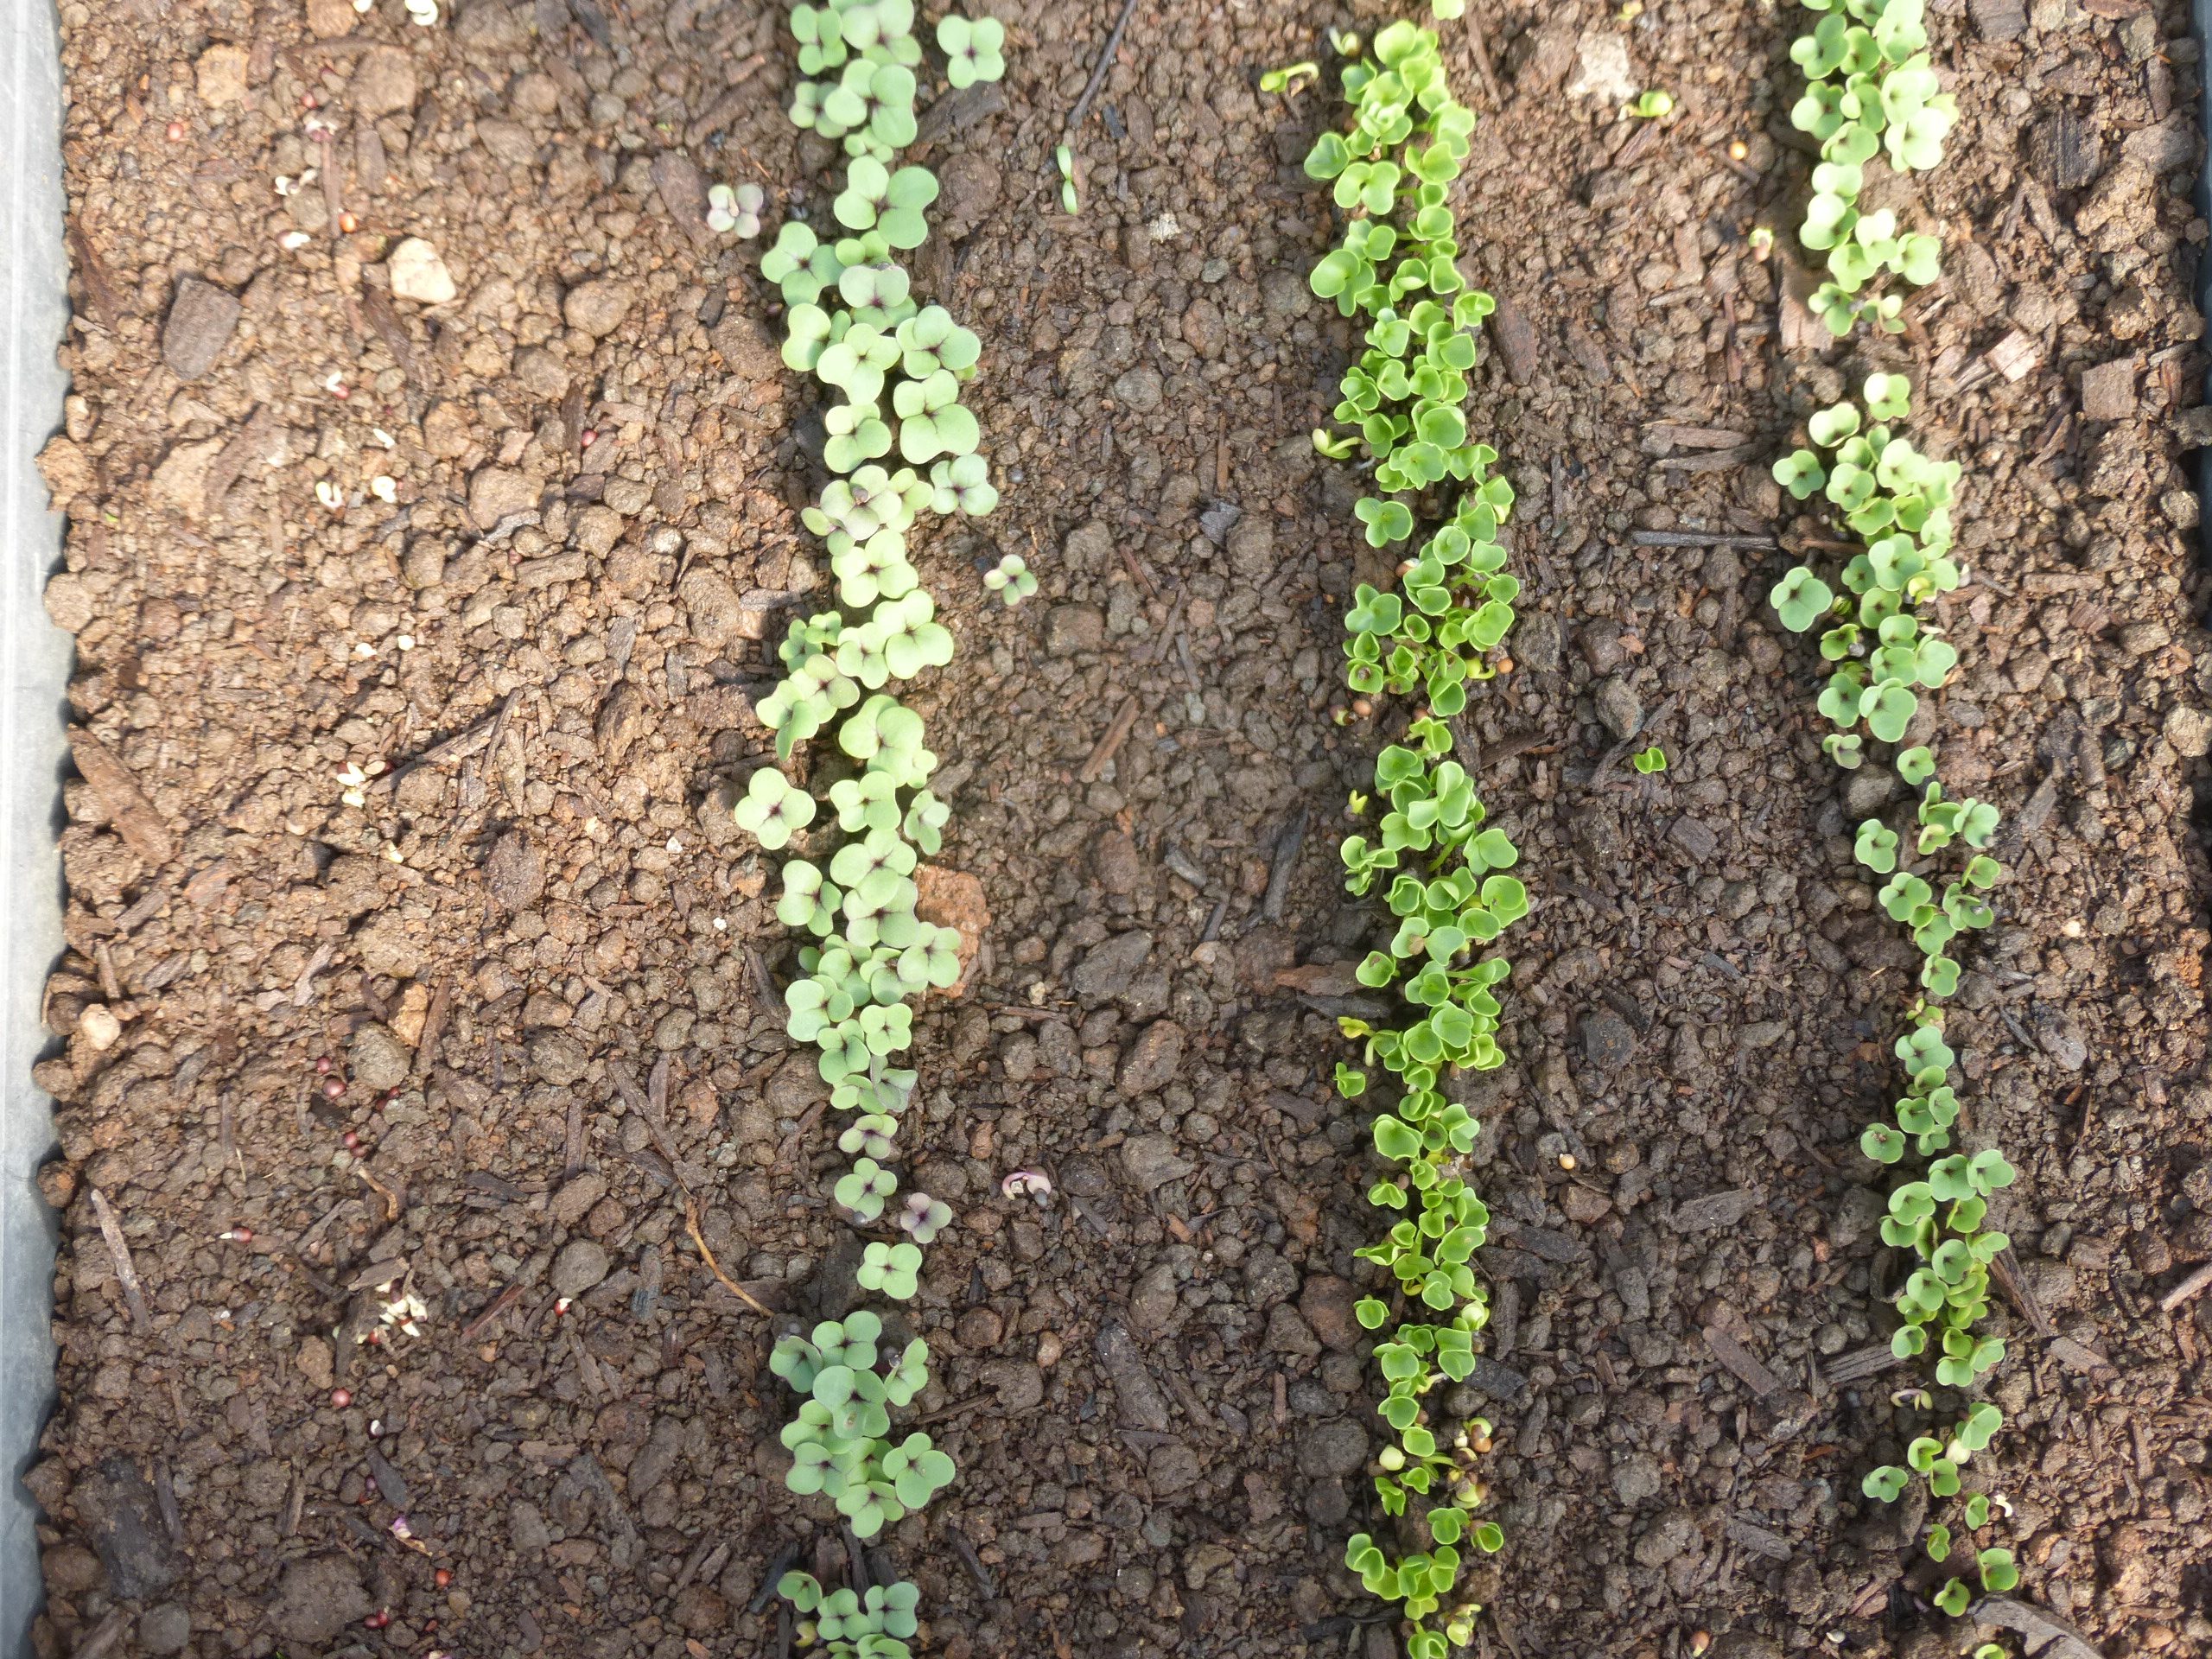 Brassica Seedlings